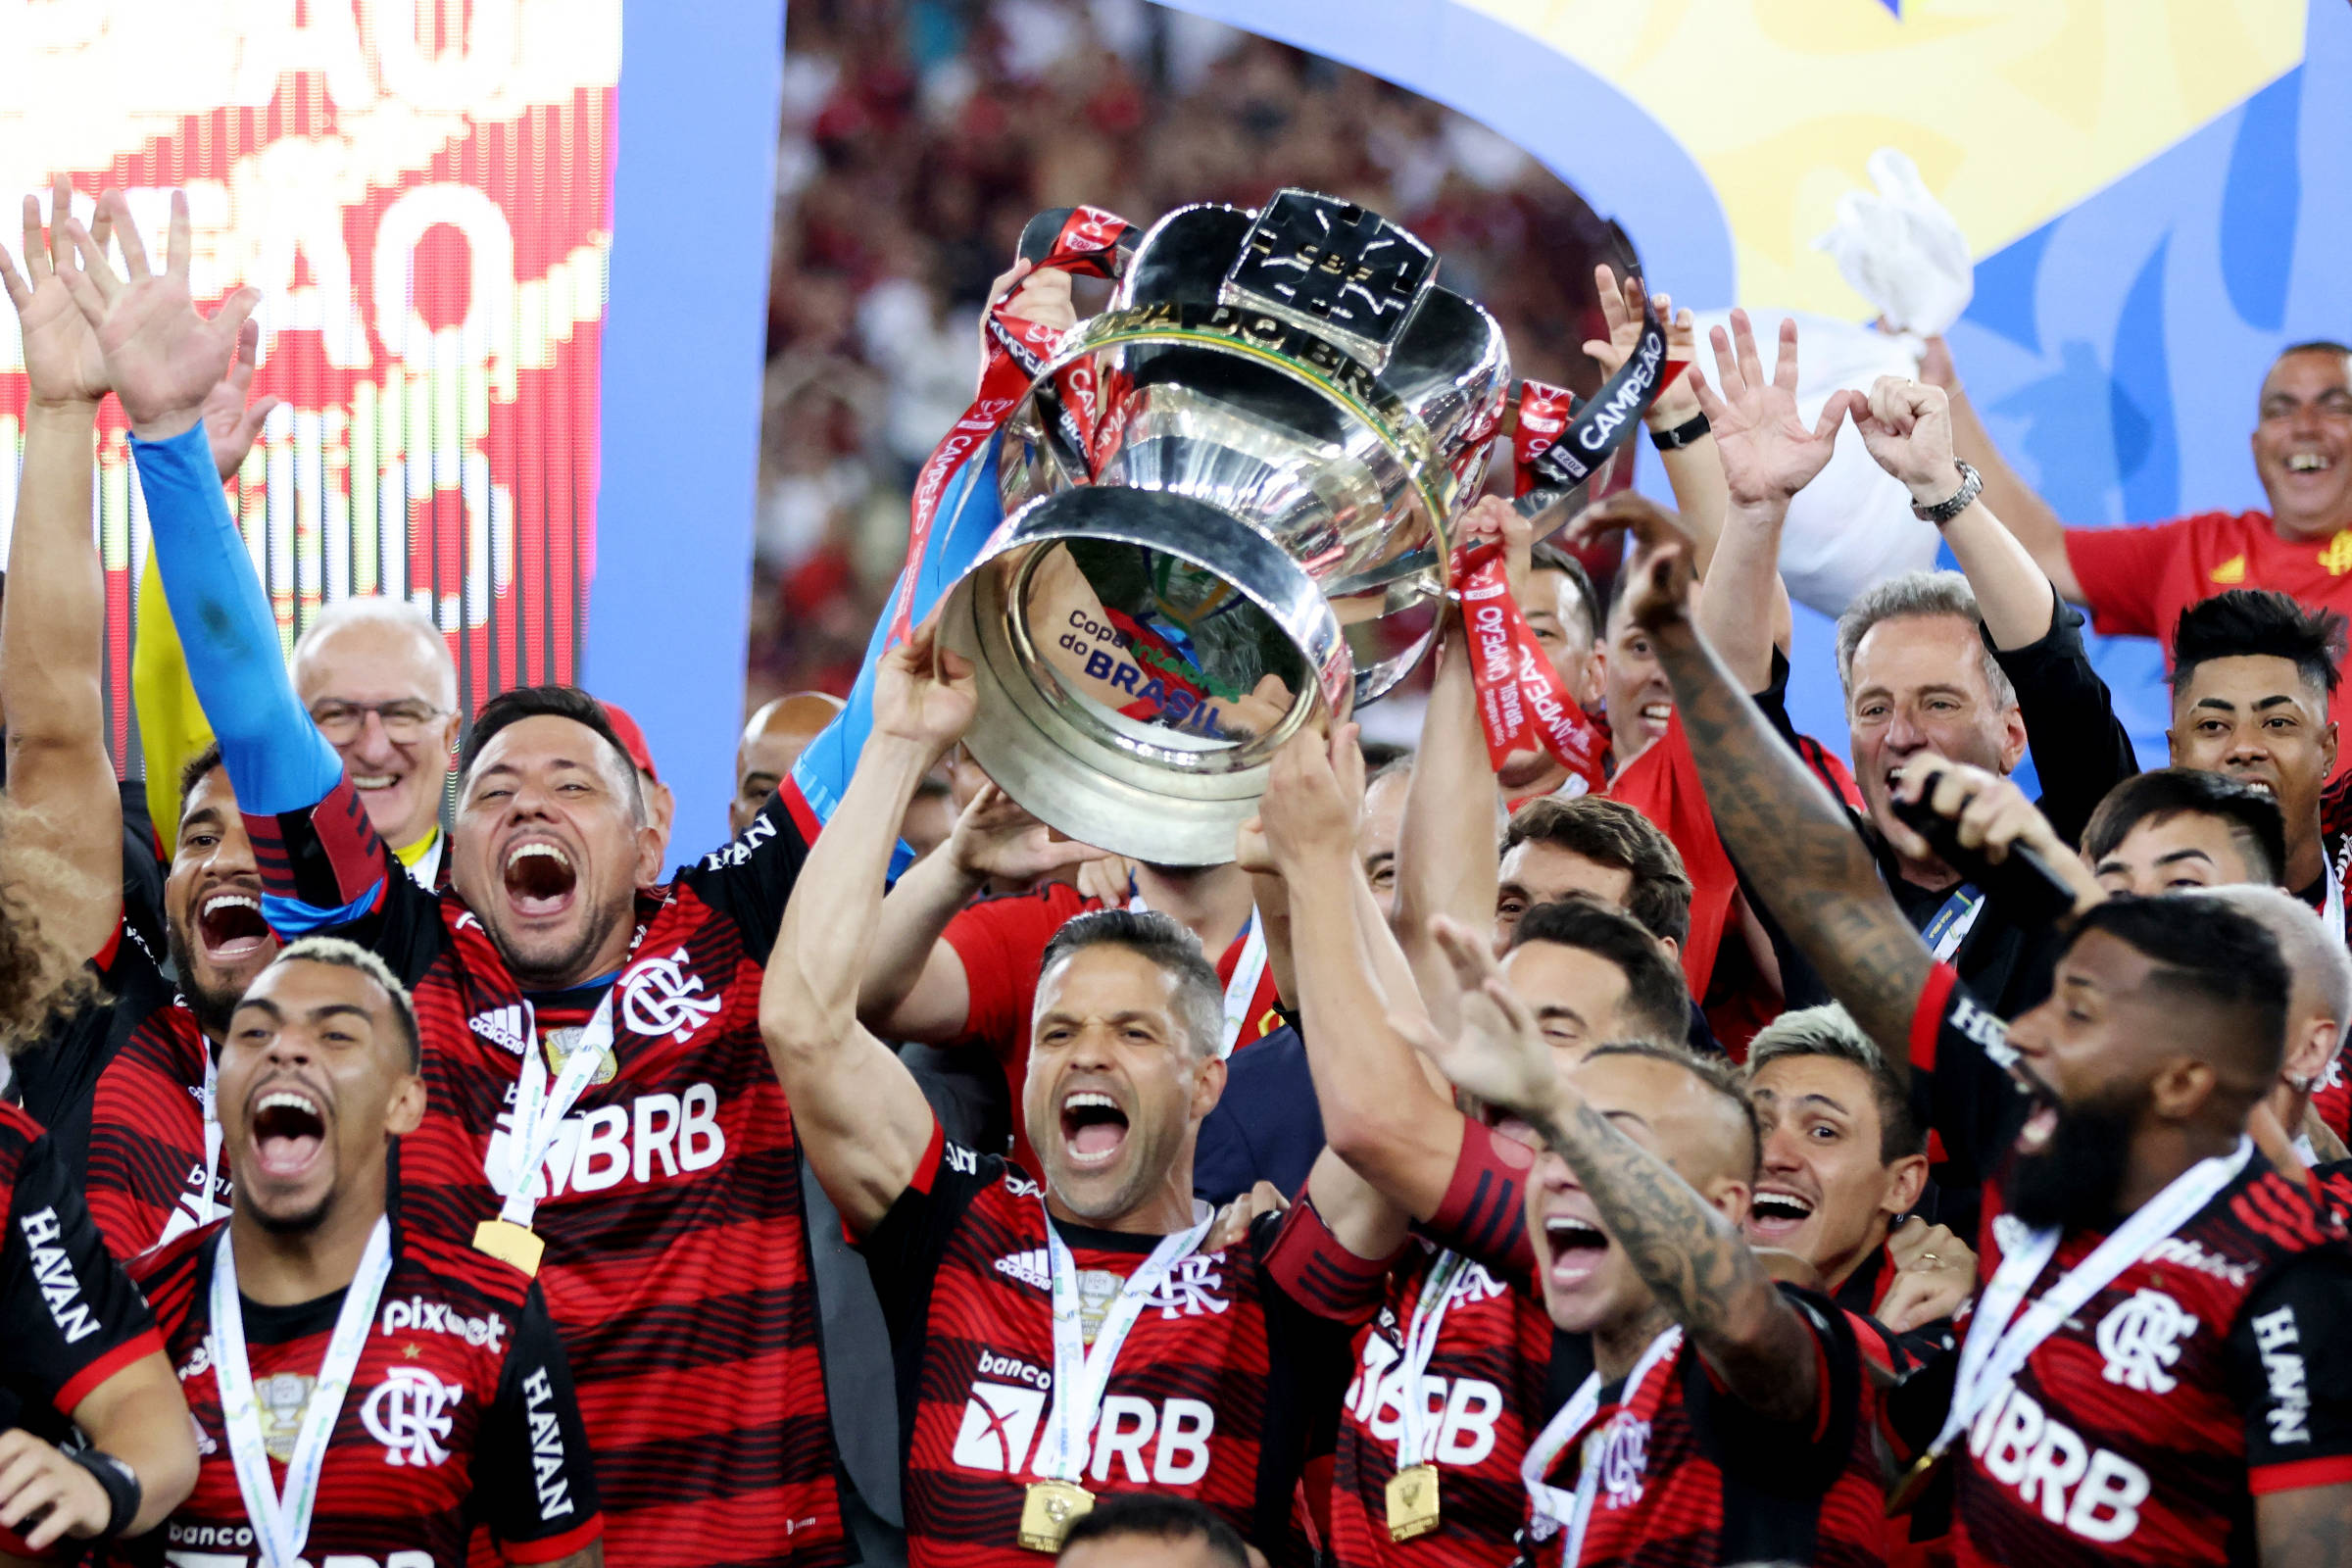 Fla x Corinthians: Qual é a premiação do campeão da Copa do Brasil